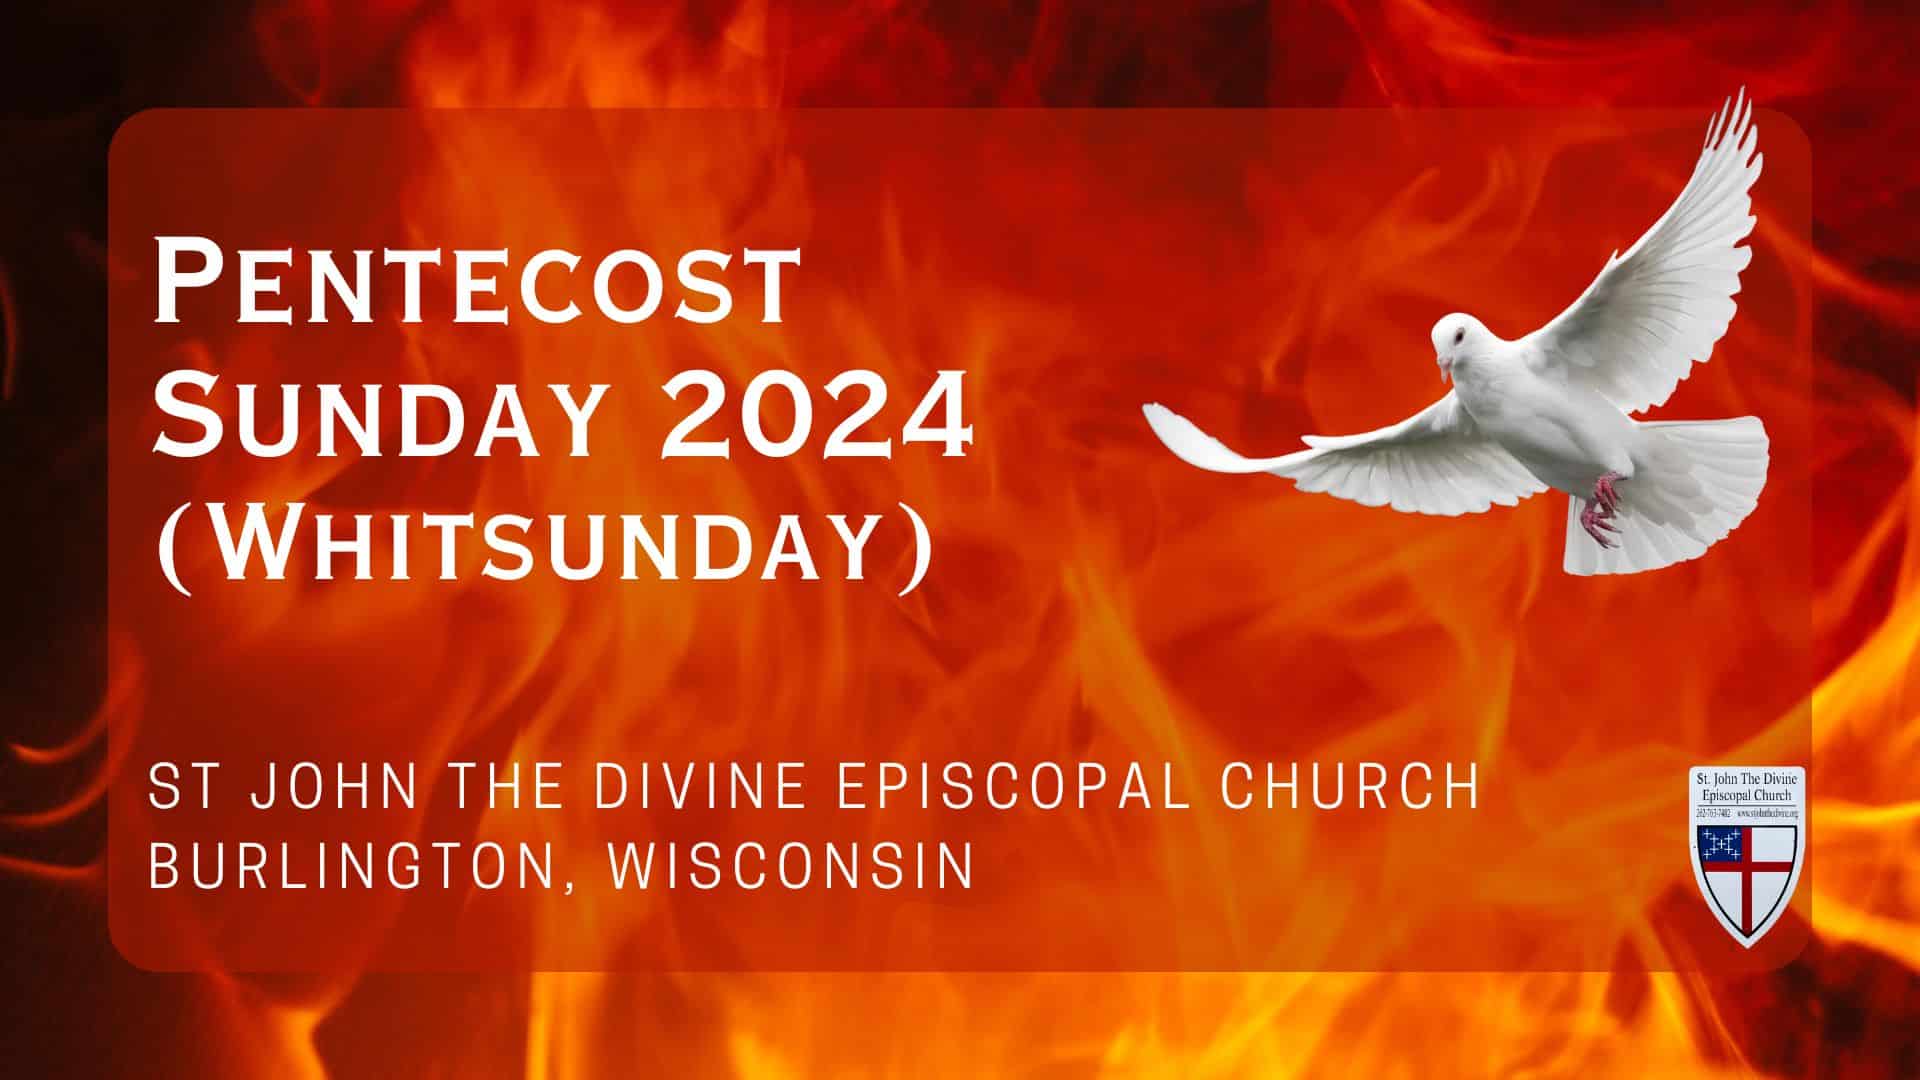 Pentecost Sunday 2024